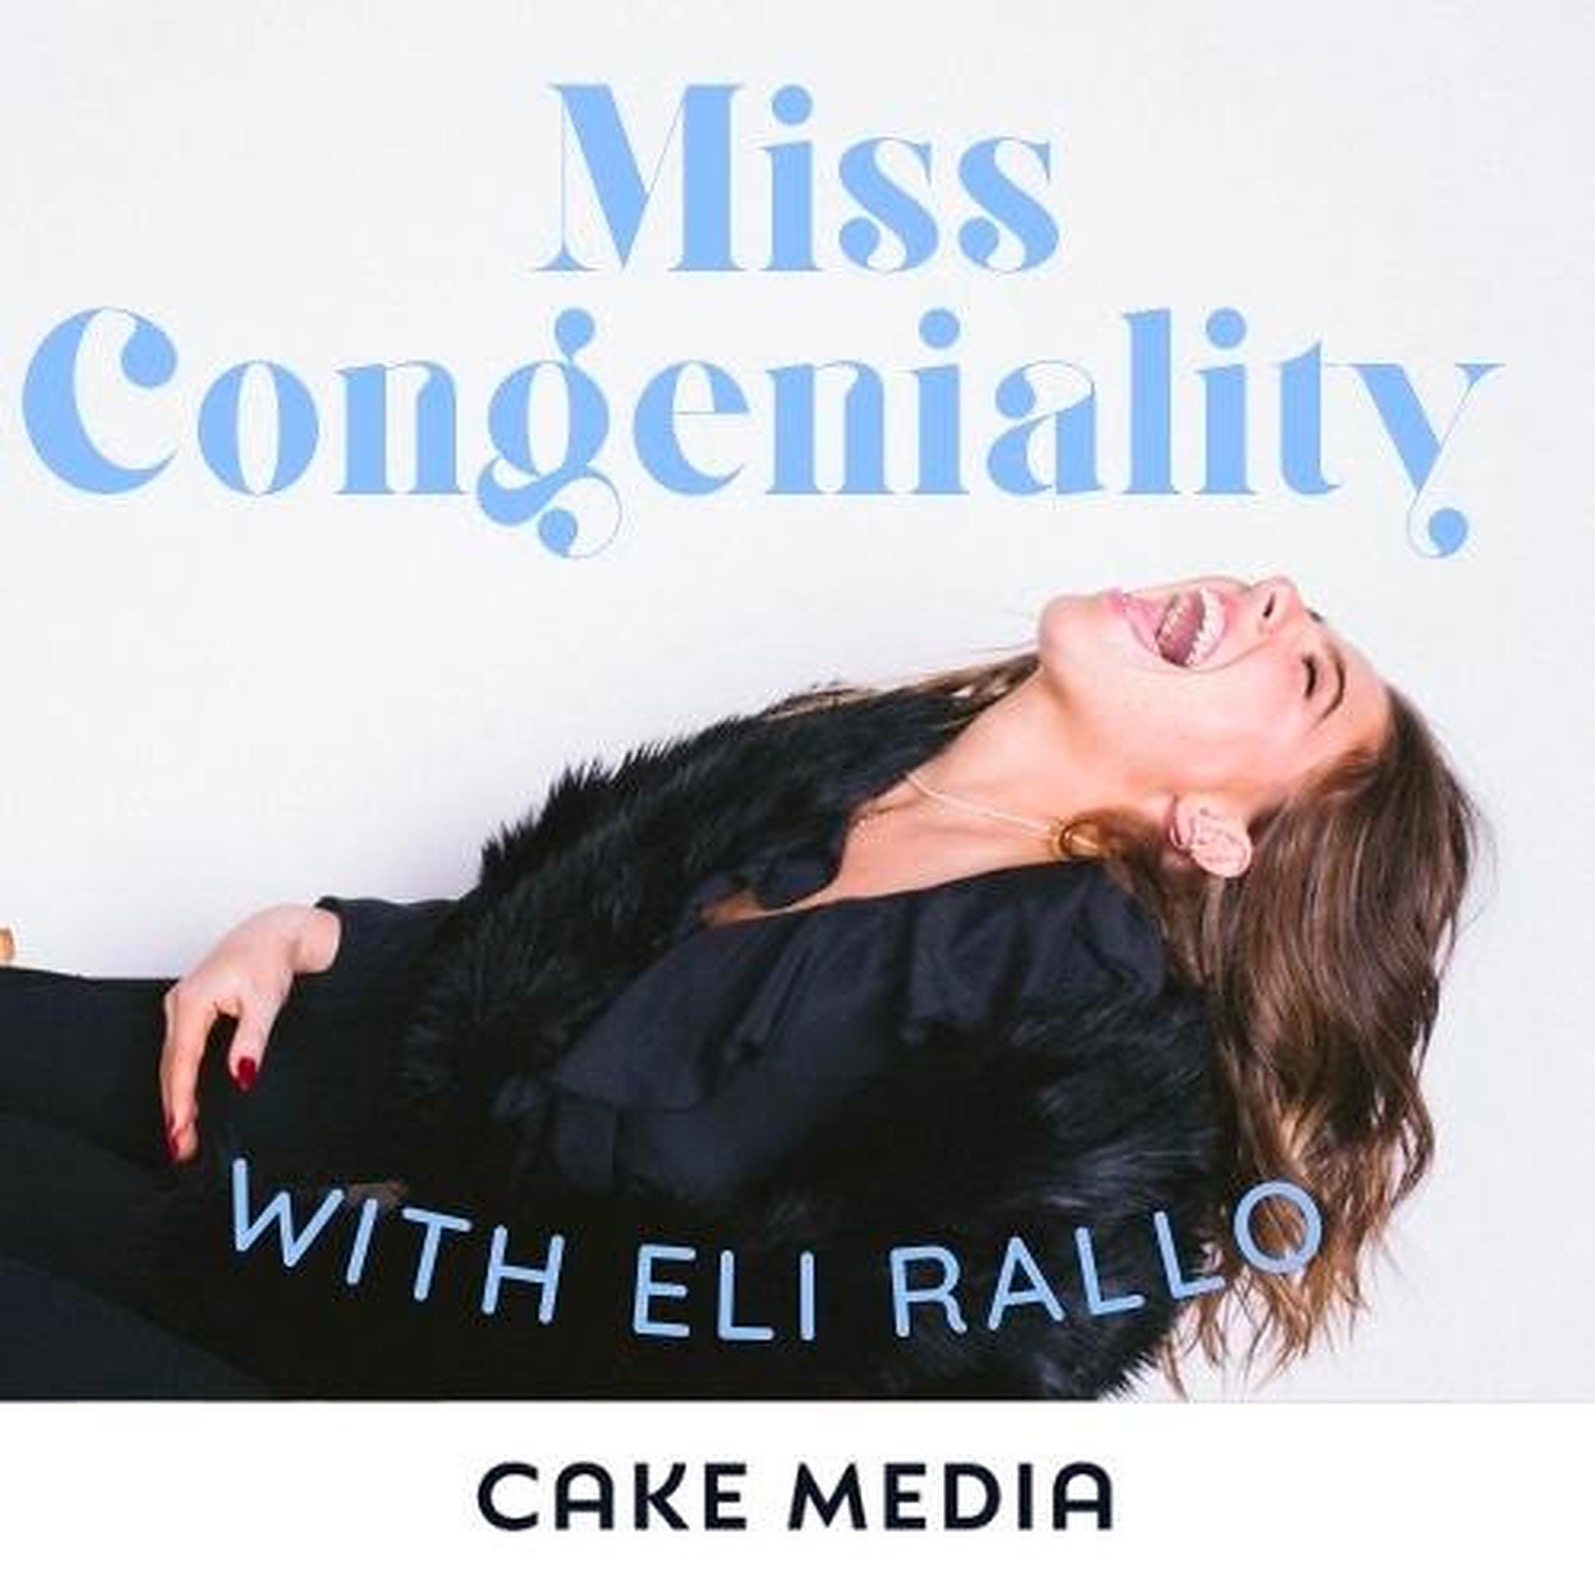 Miss Congeniality meets Golden Girls”